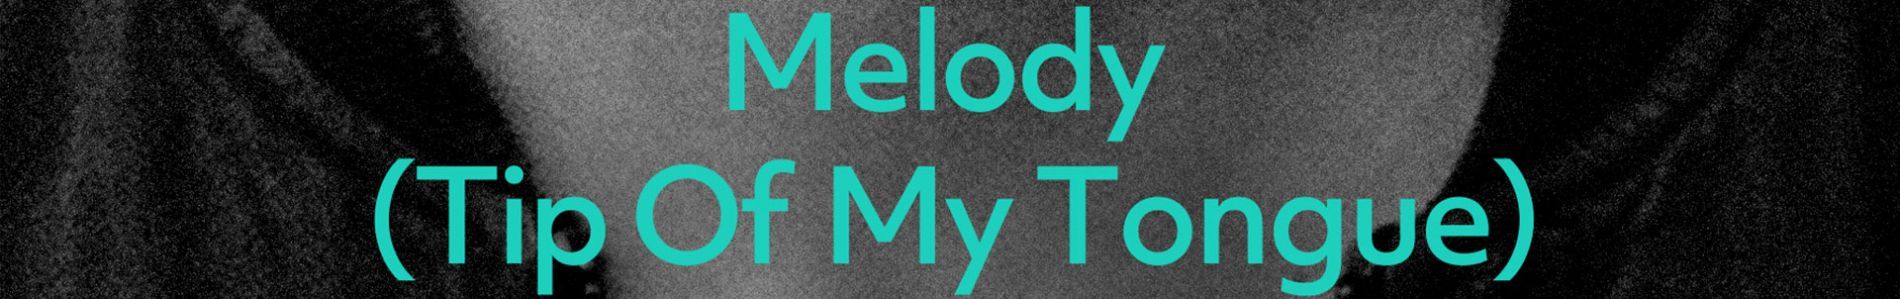 Melody (Tip Of My Tongue) header